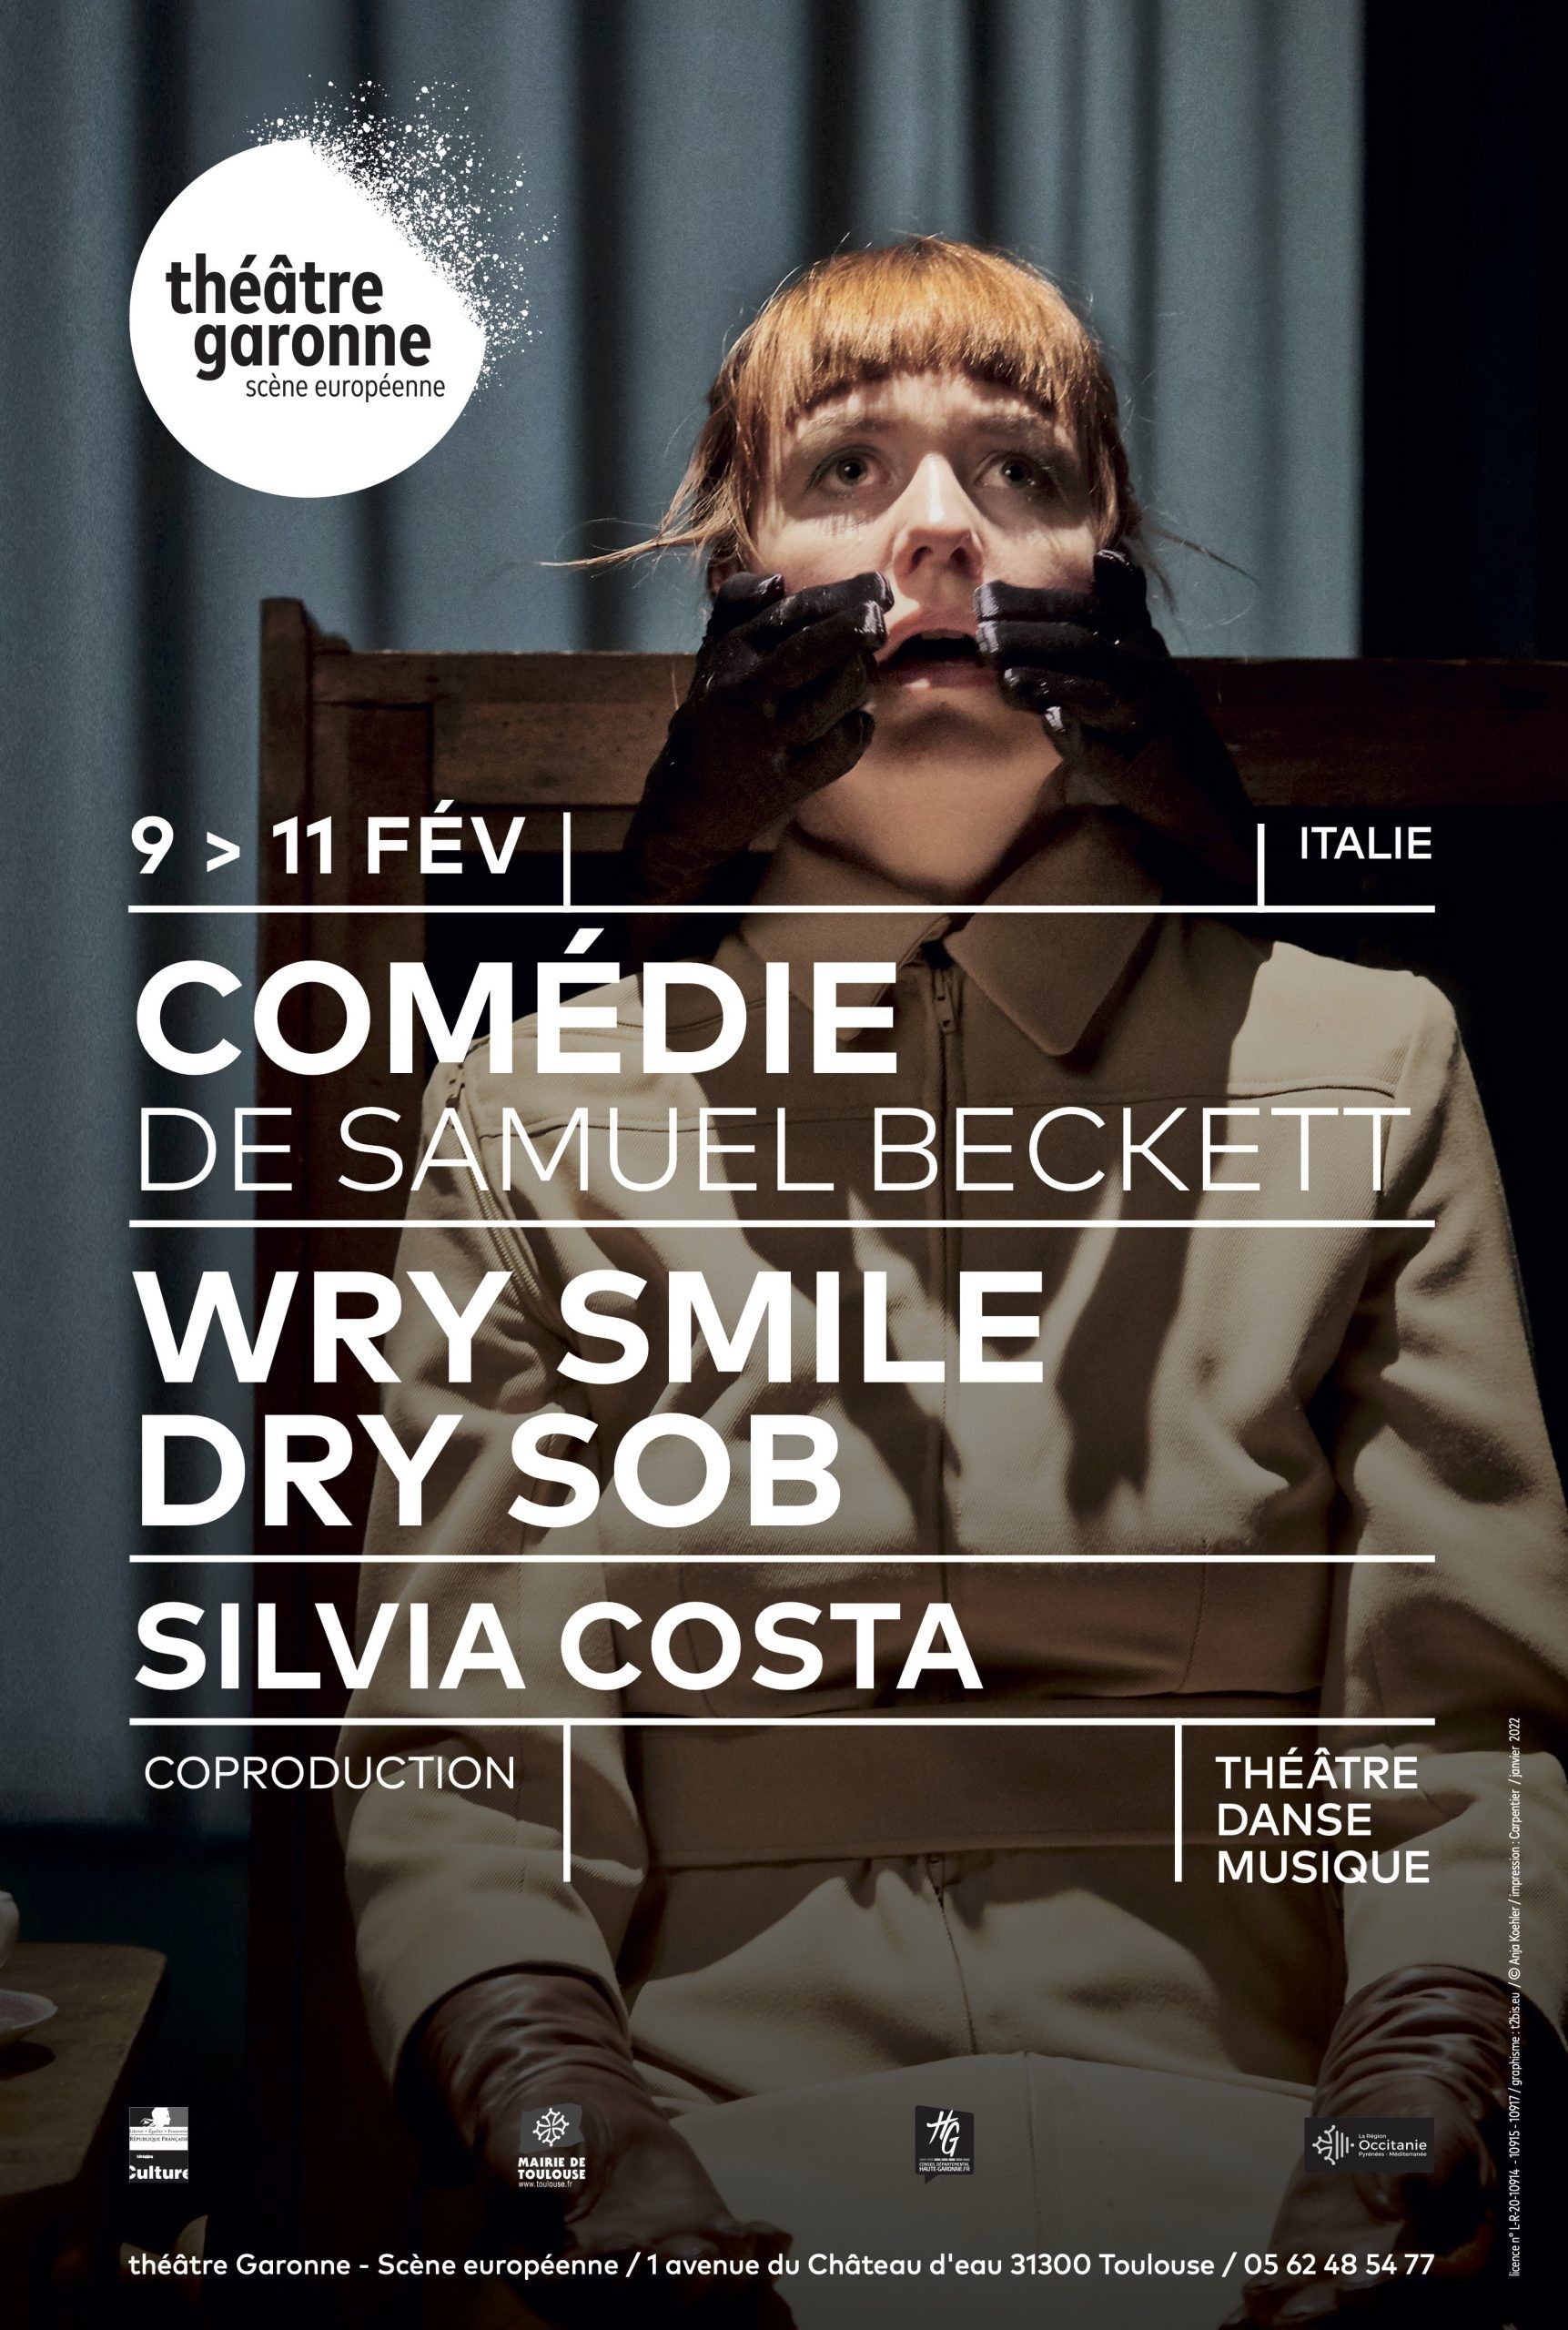 Théâtre Garonne - Comédie de Samuel Beckett